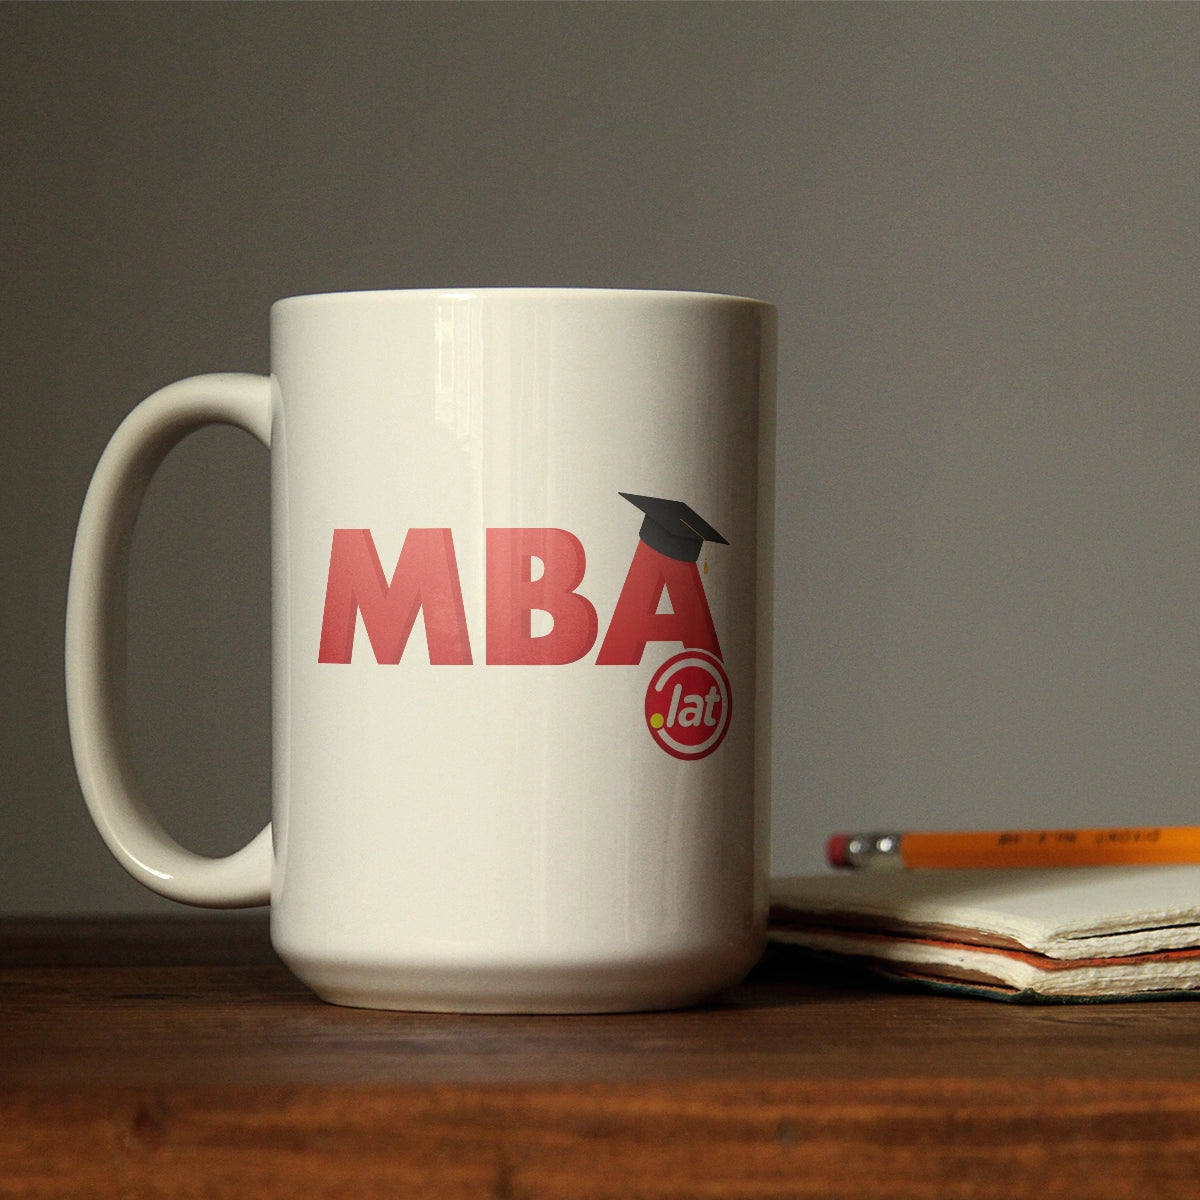 MBA.lat